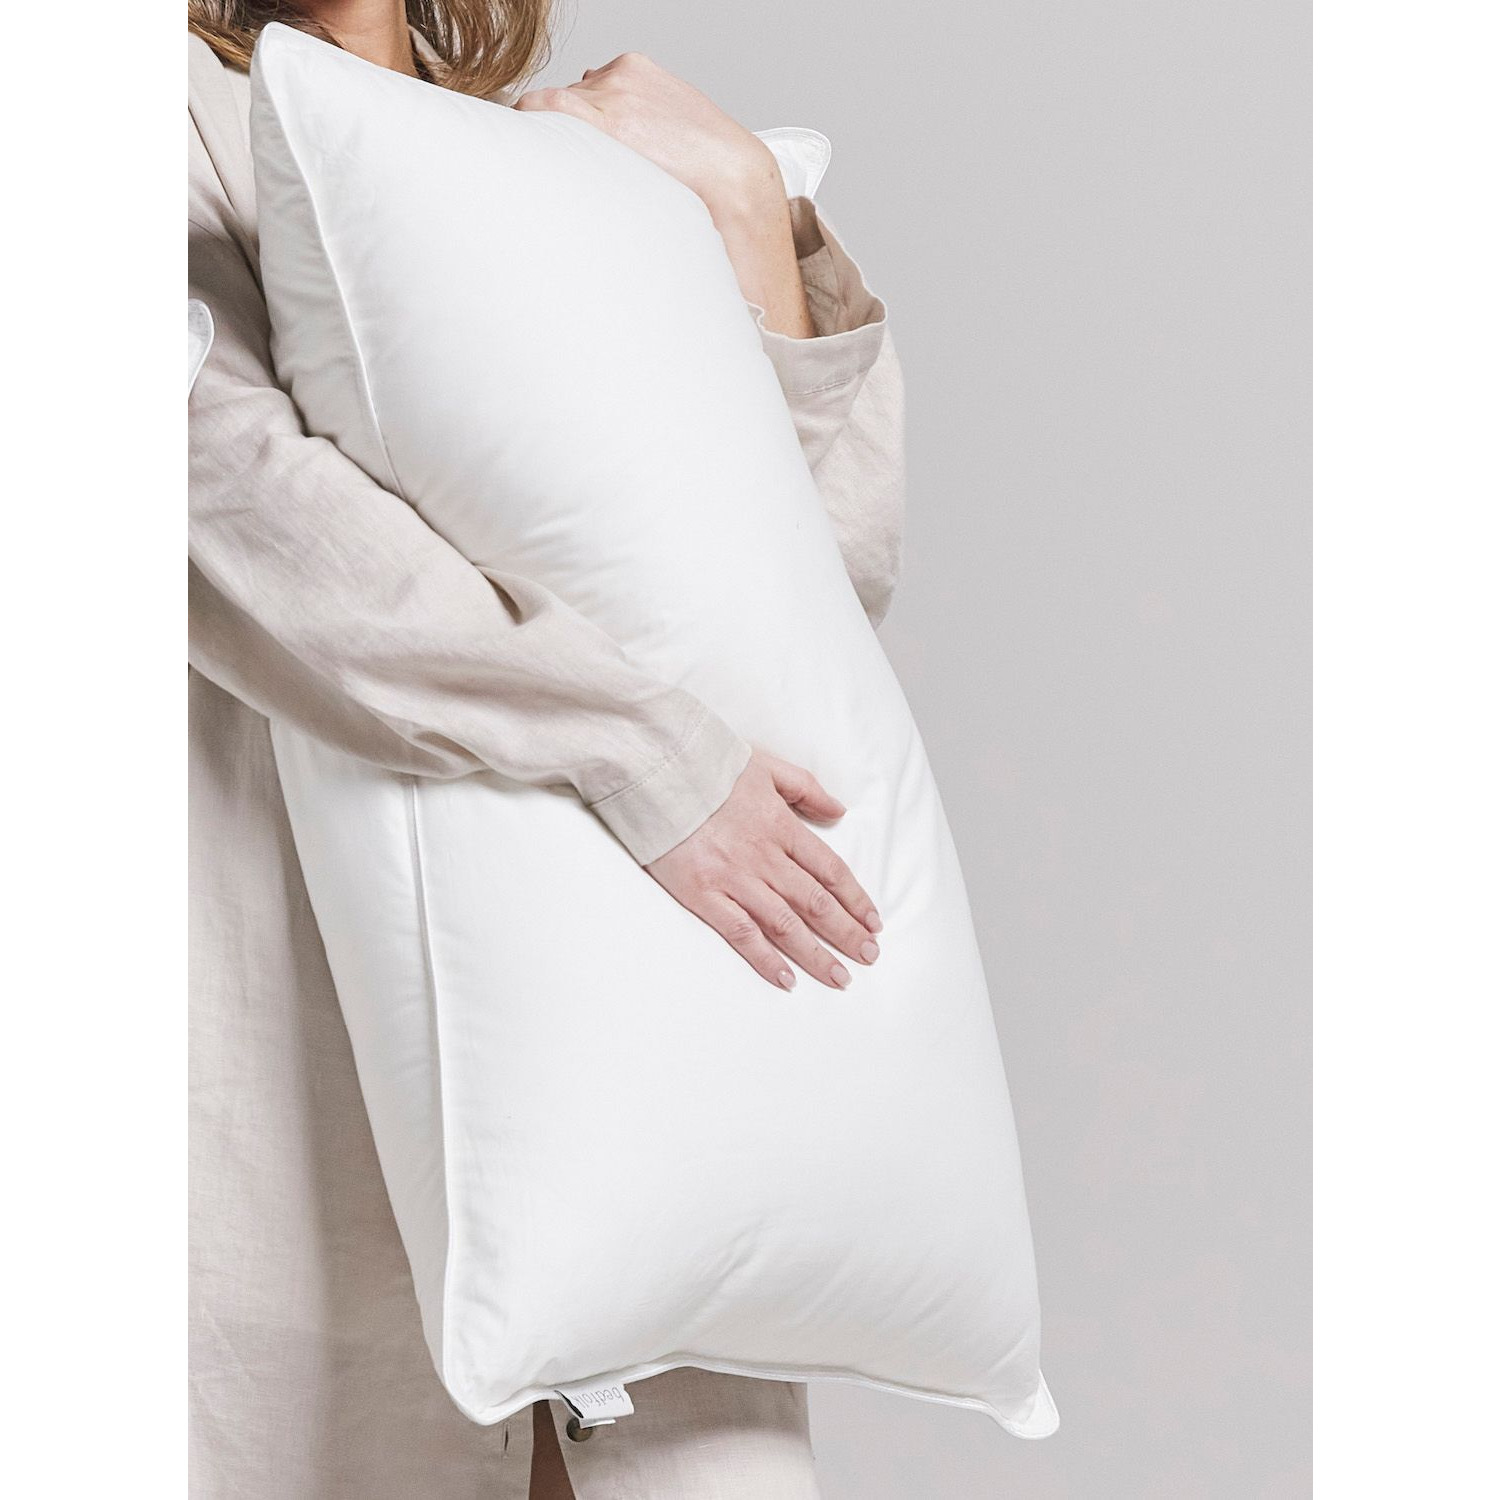 Bedfolk Duck Down Standard Pillow, Firm - image 1